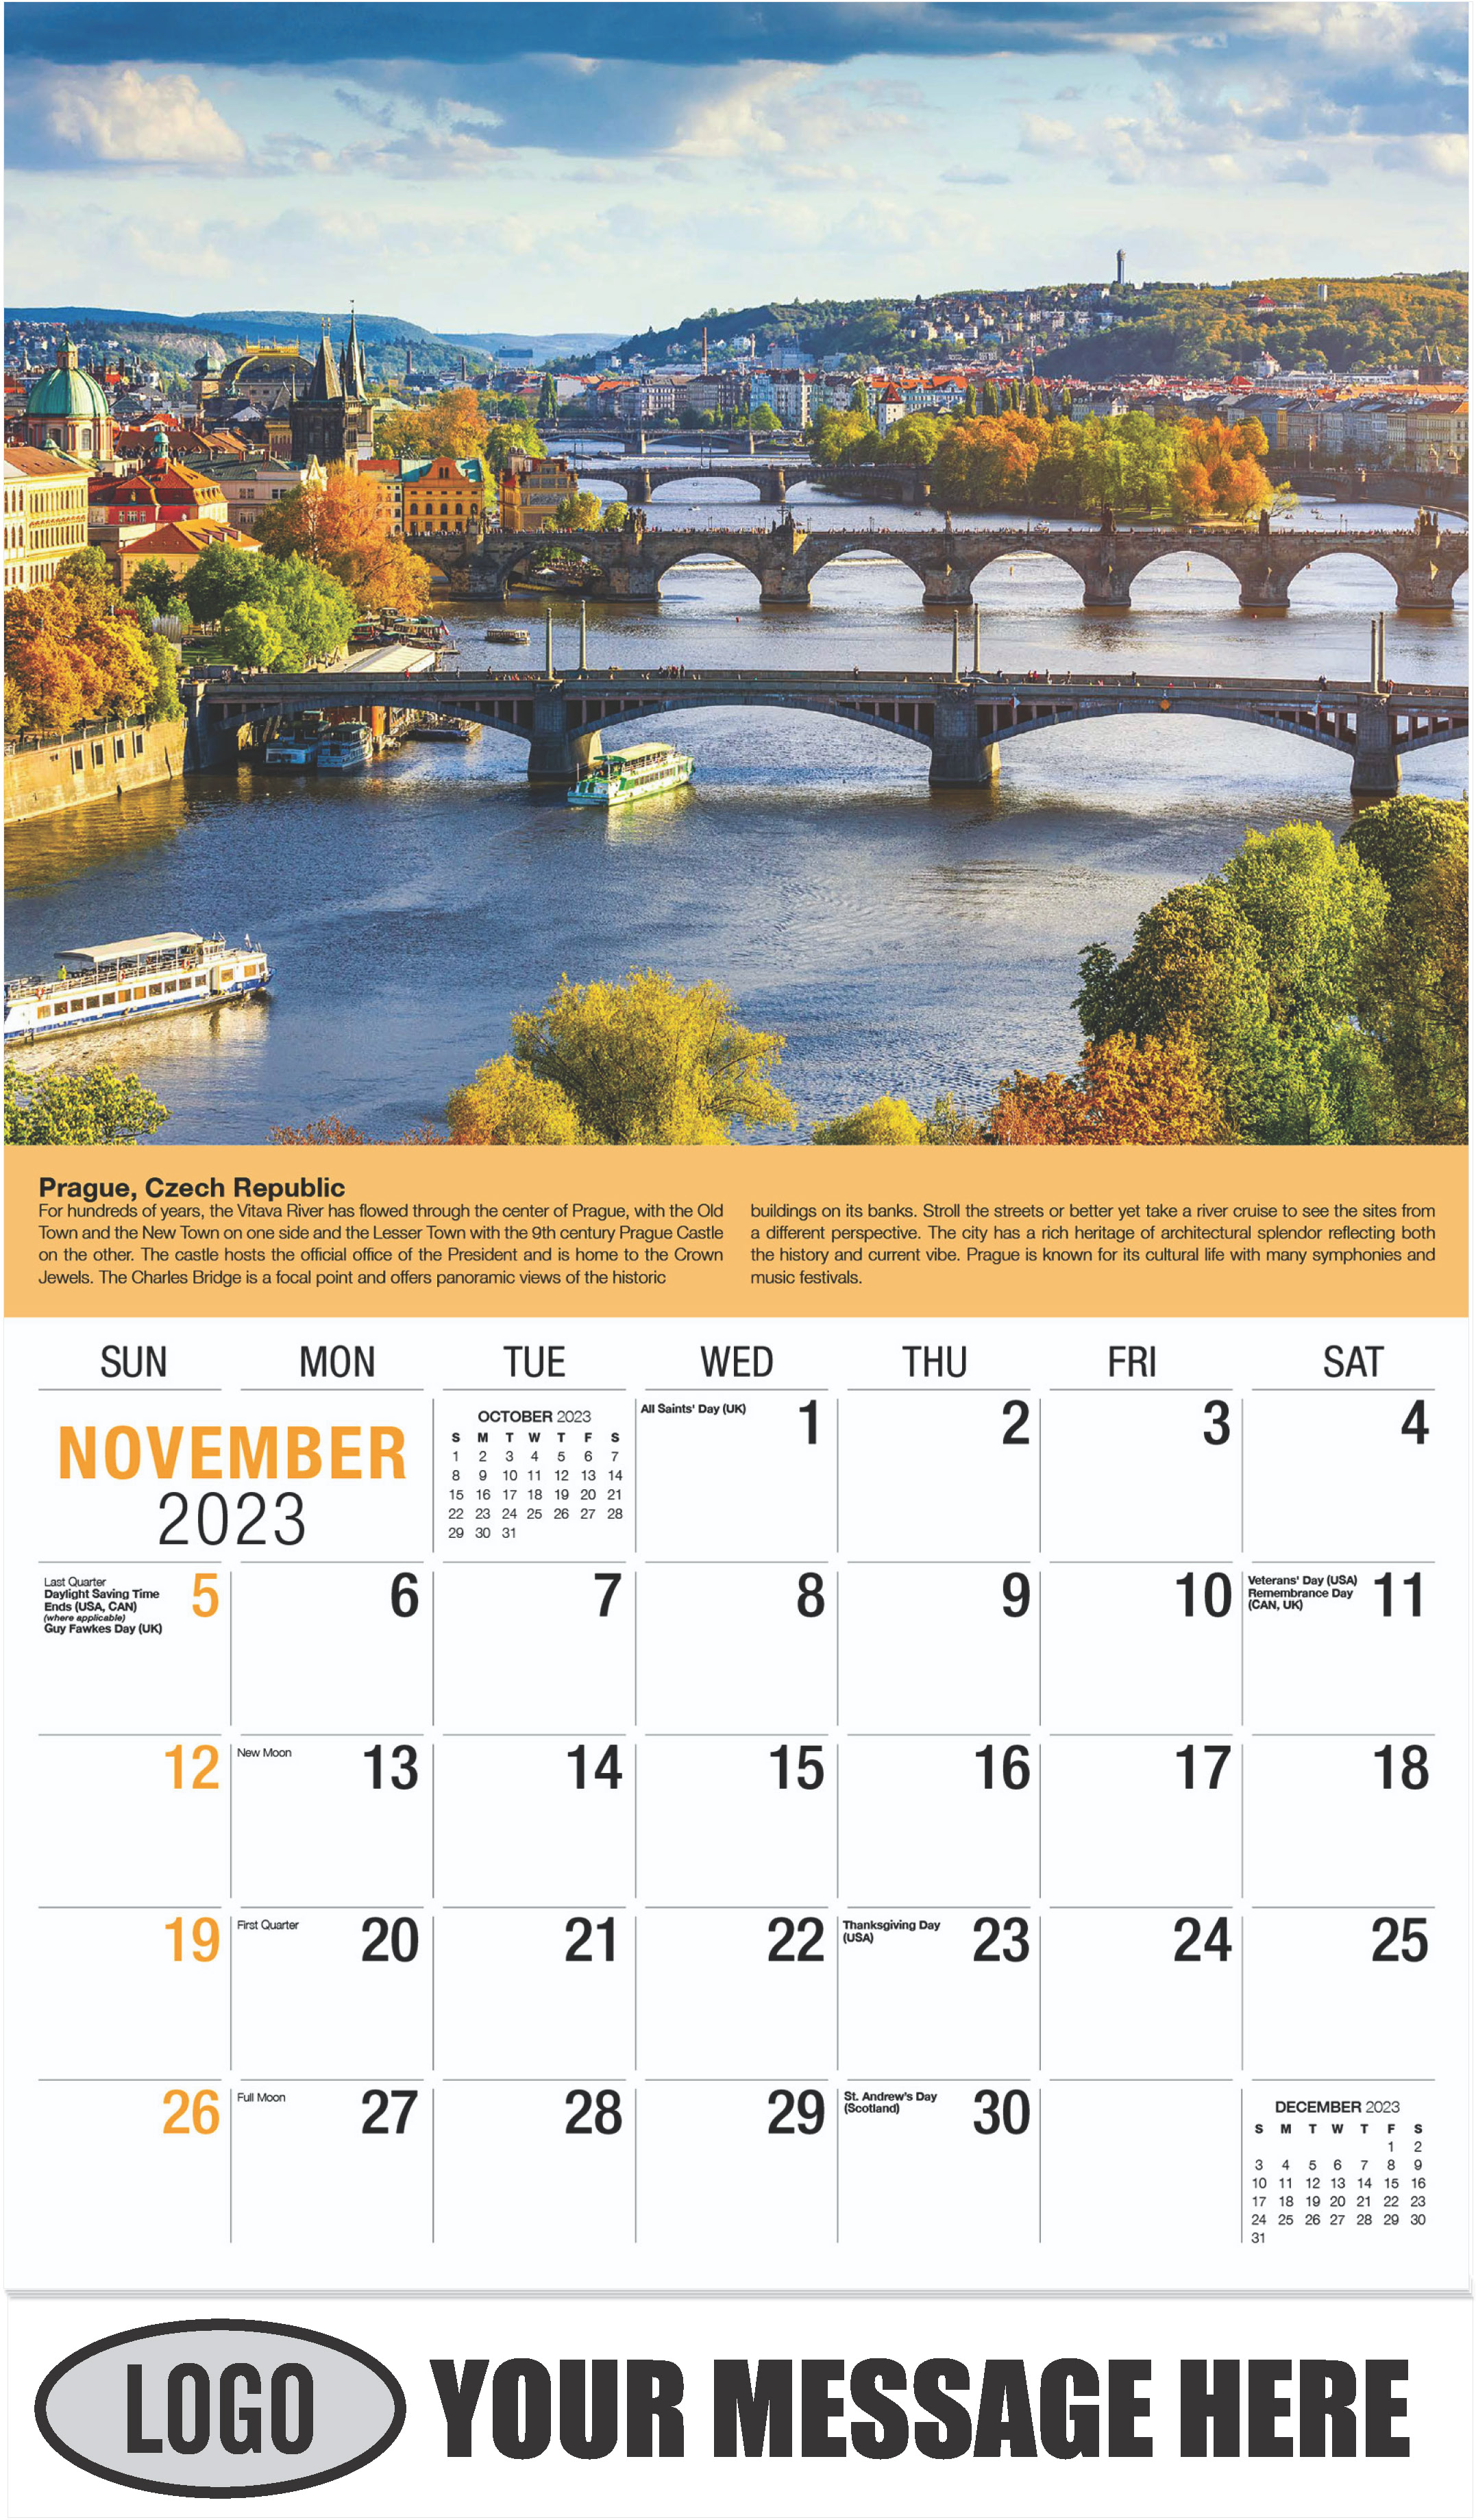 Prague, Czech Republic - November - World Travel 2023 Promotional Calendar